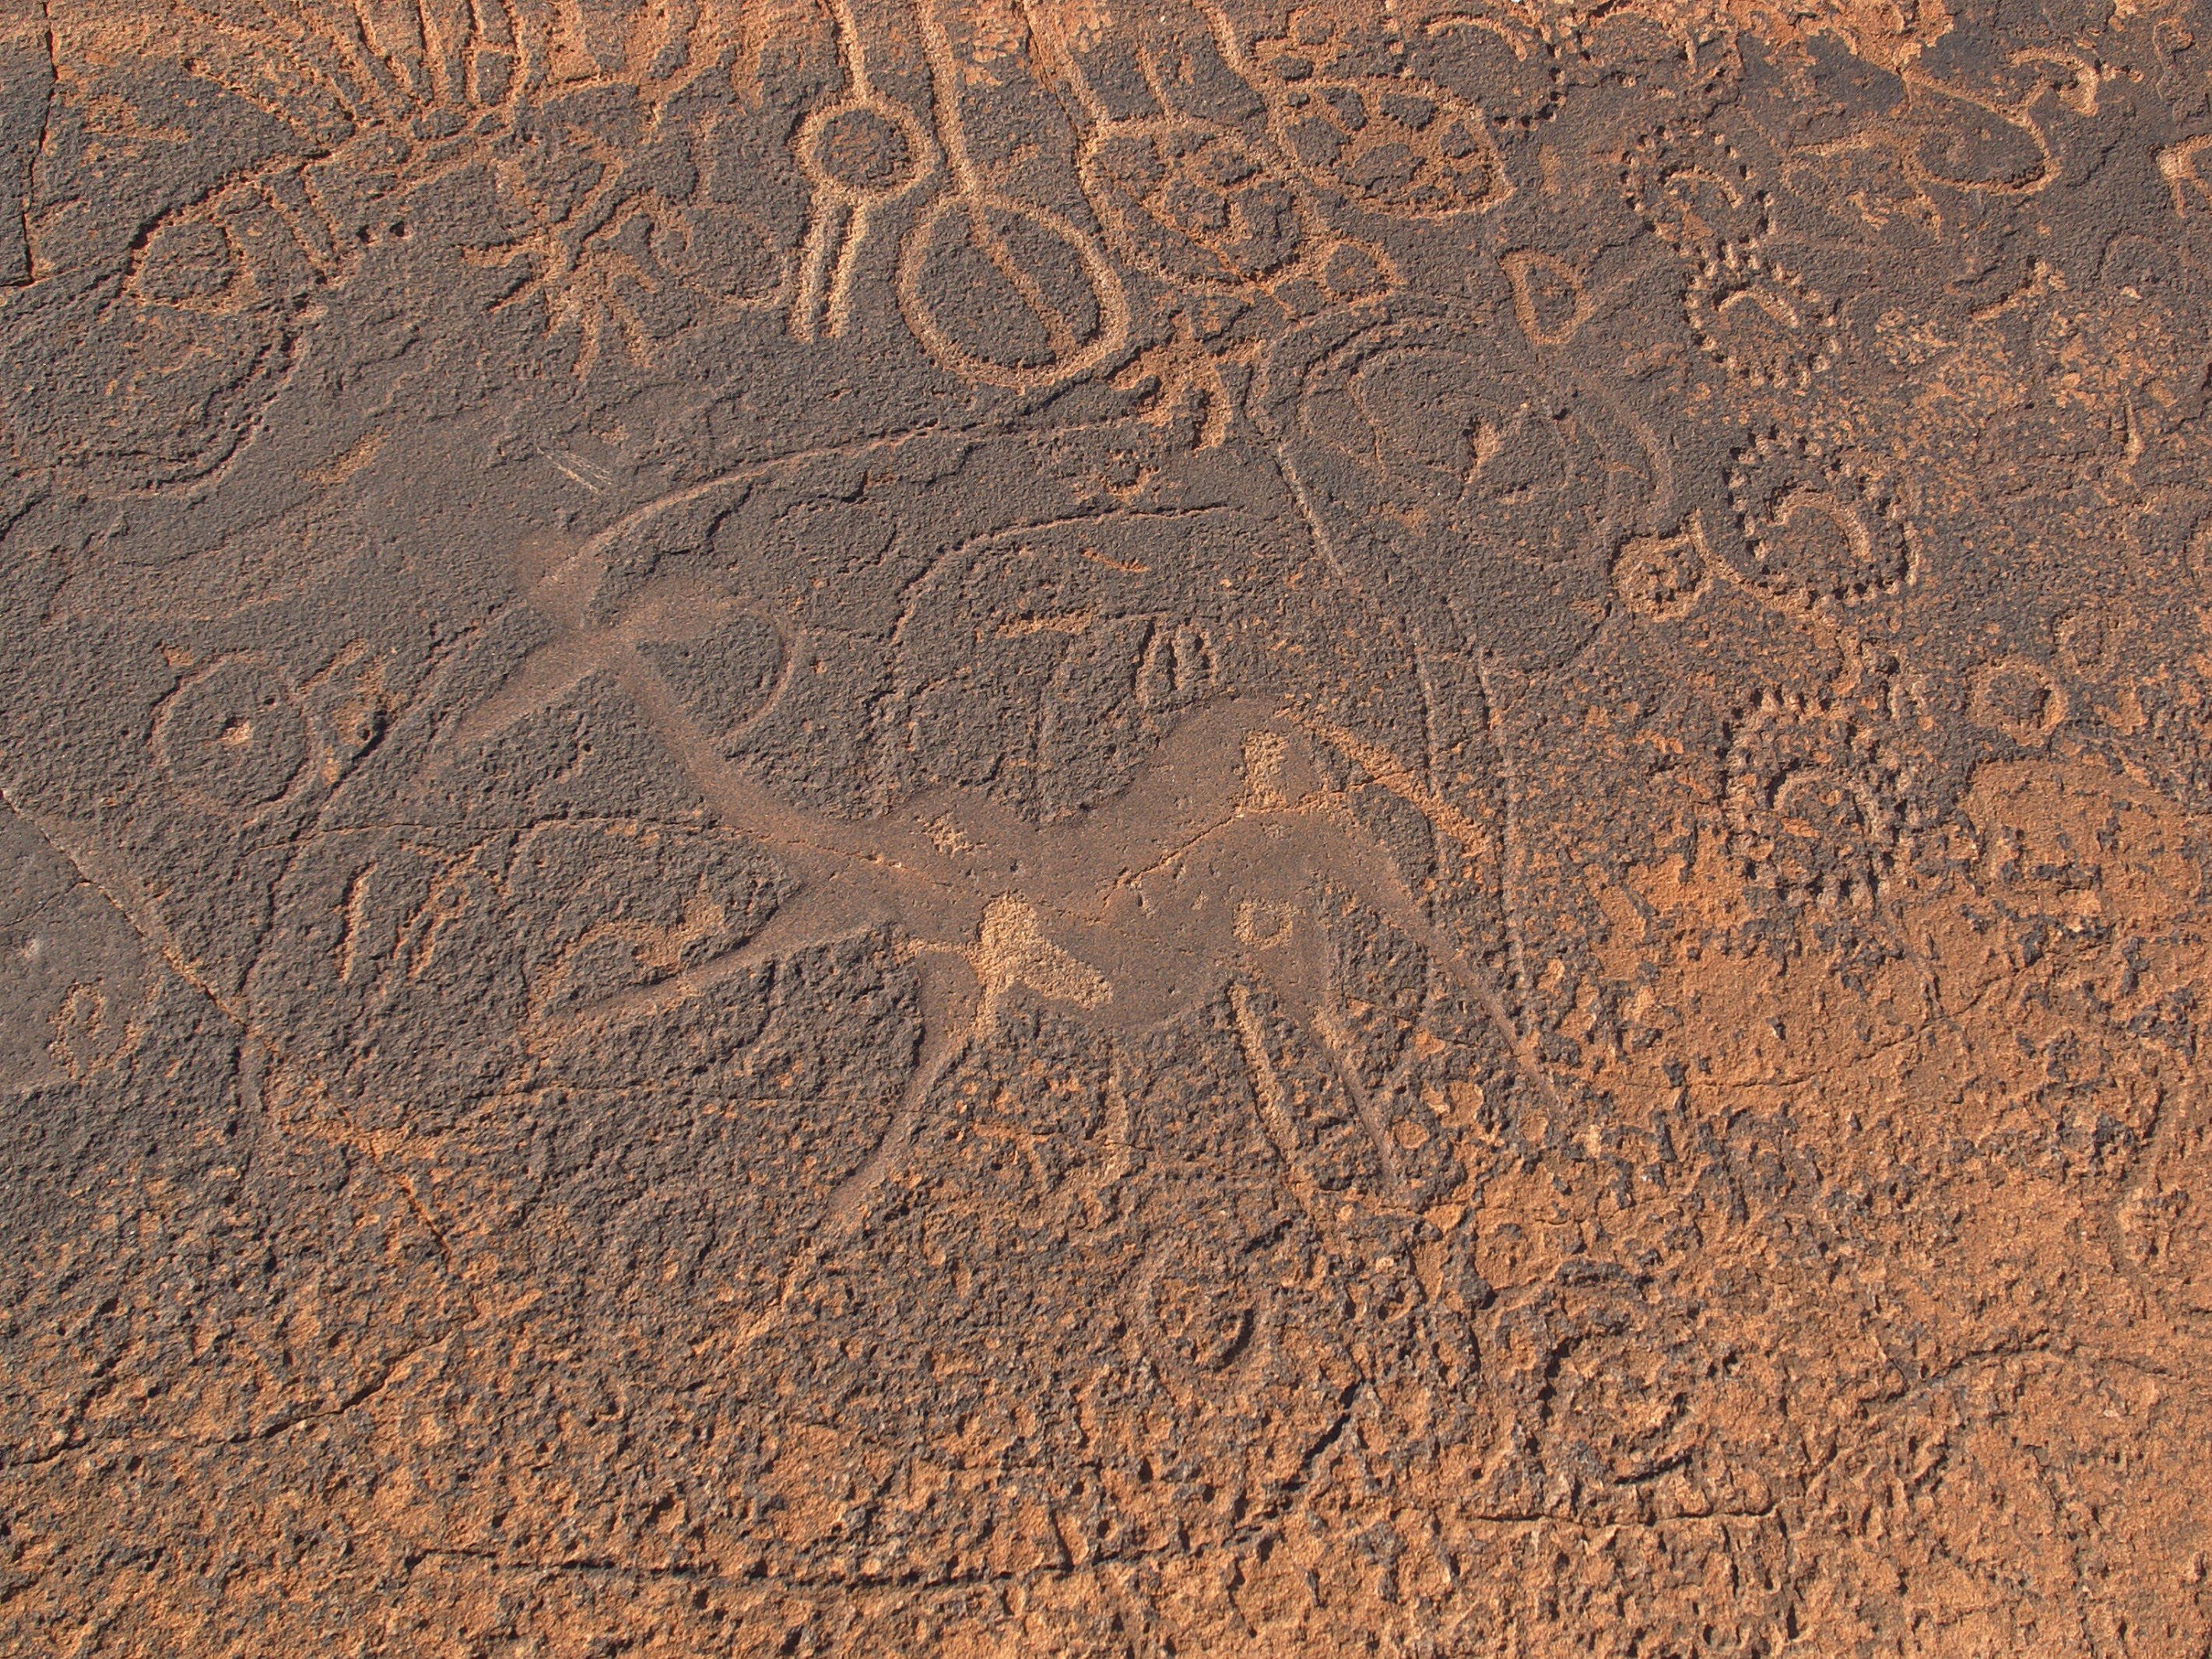 San - Khoekhoen rock art - Namibia